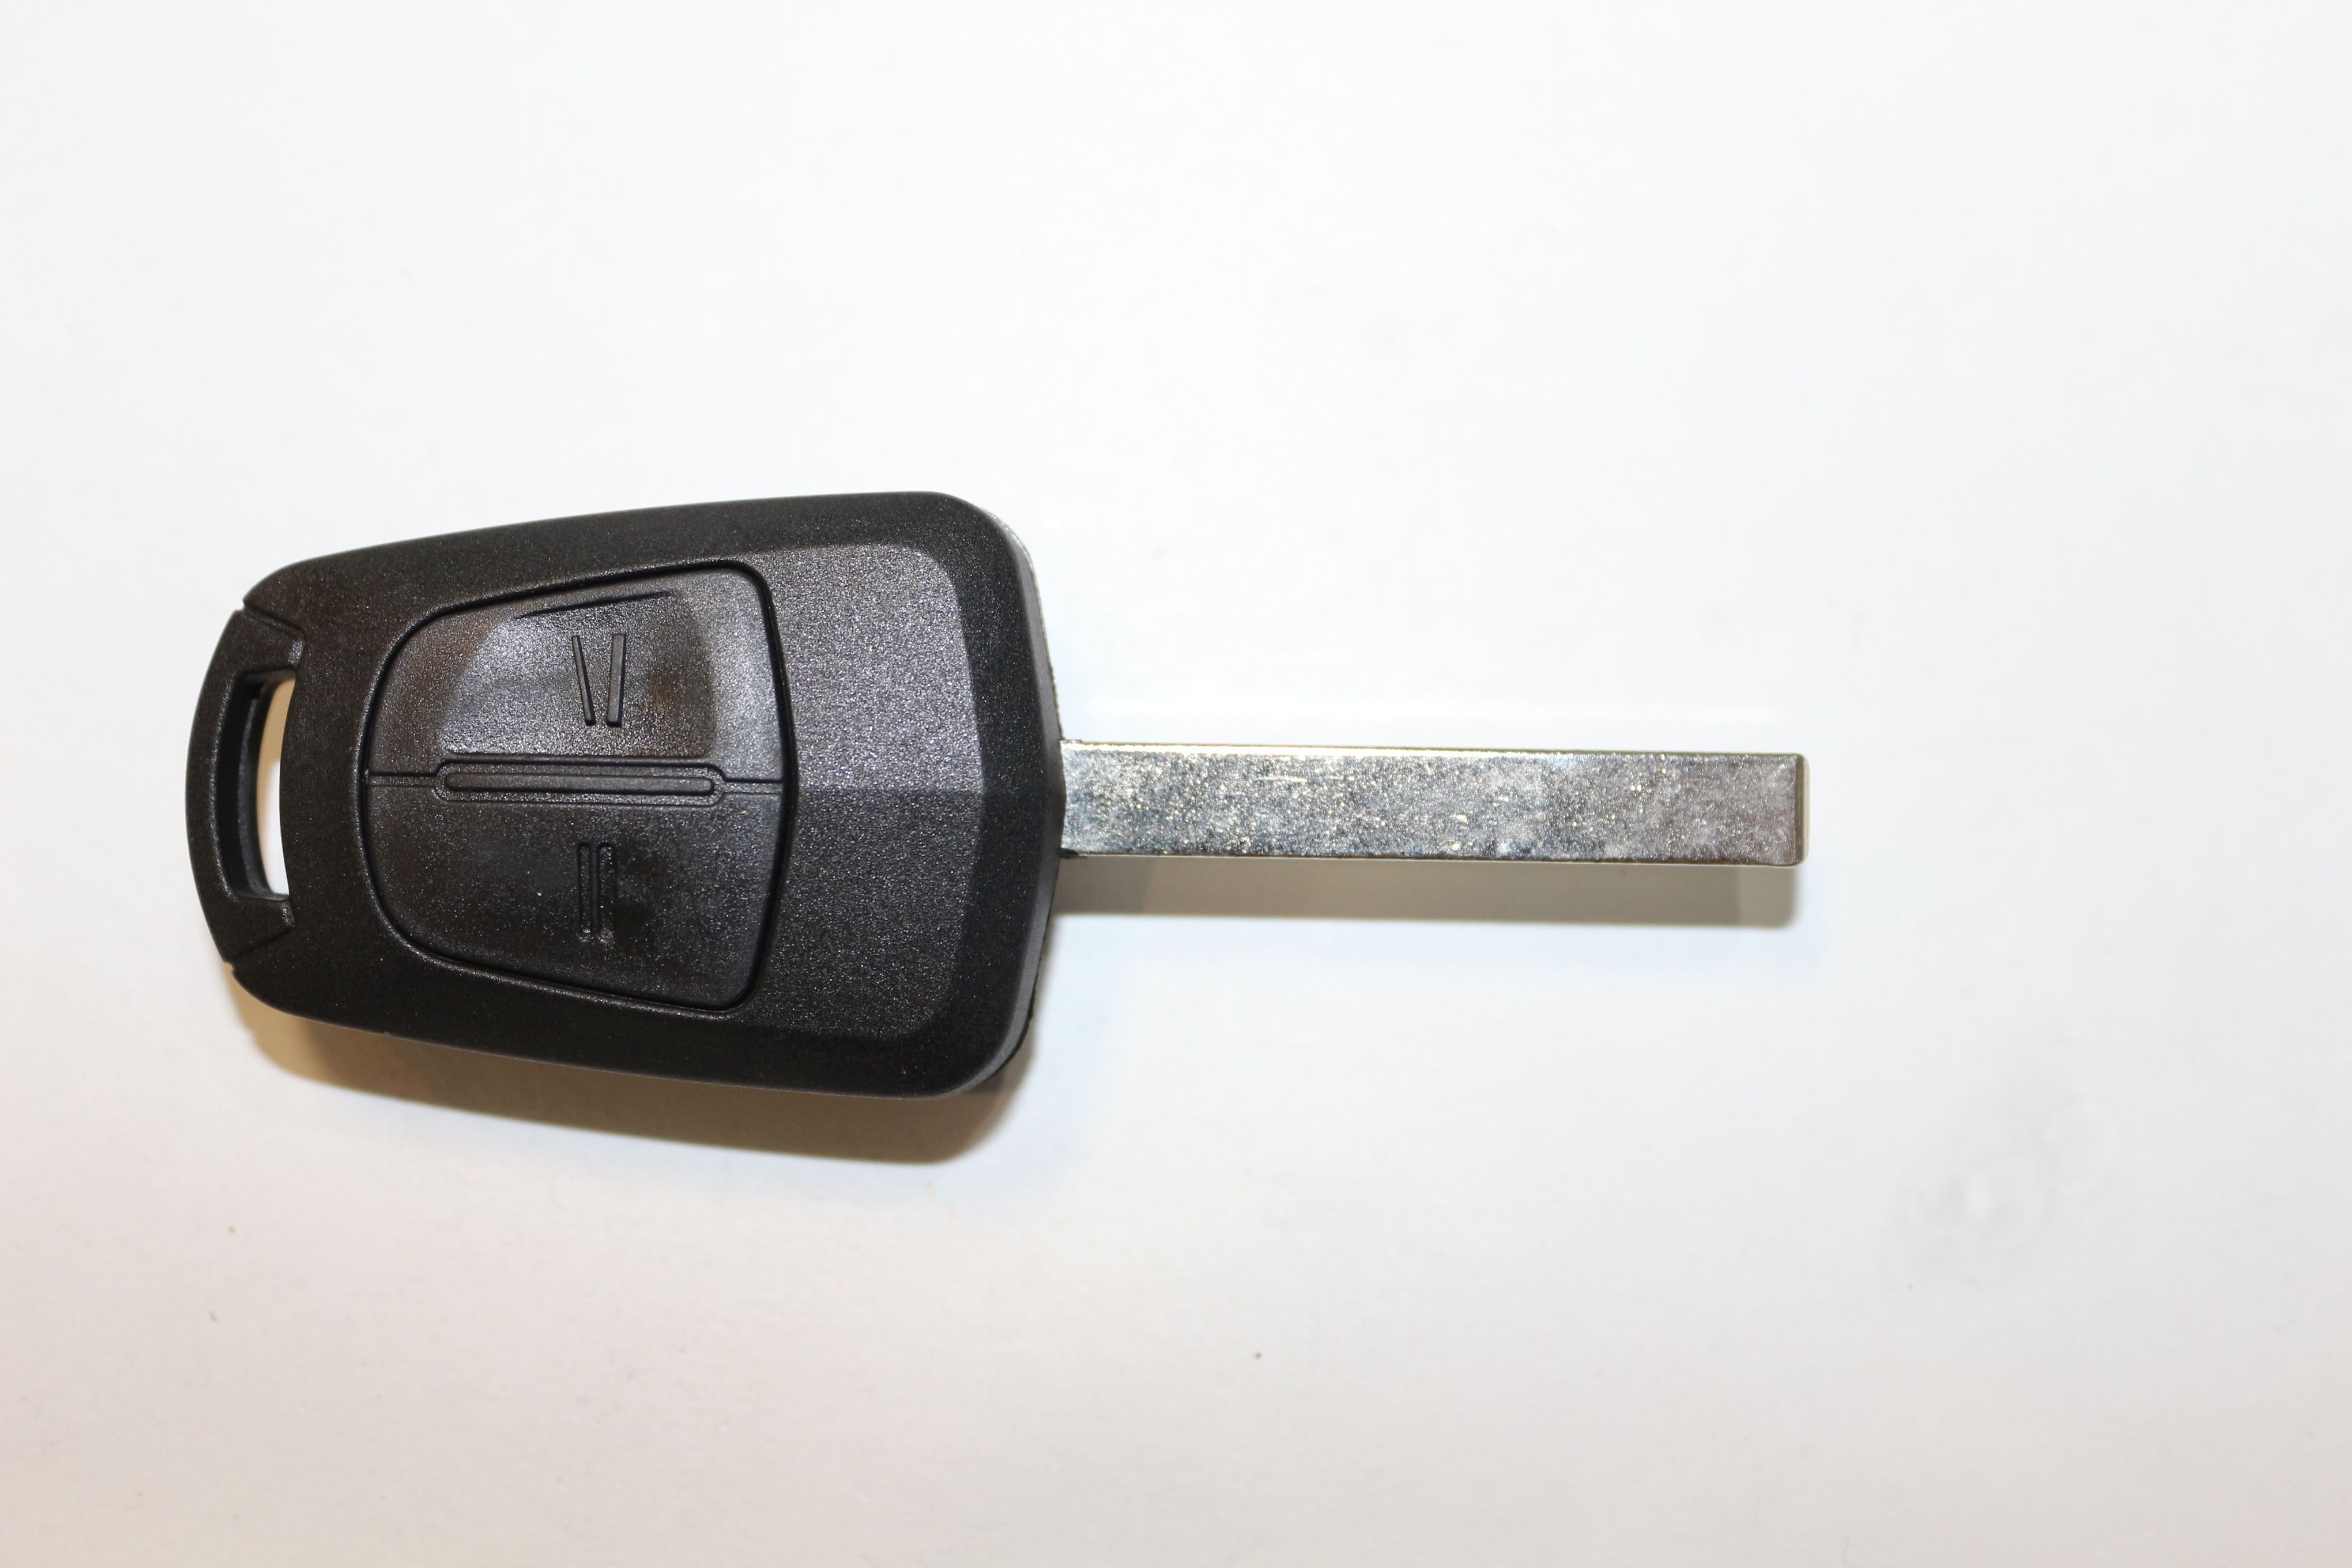 Ключ зажигания Autokey, заготовка для Opel, дист. в сборе (2 кнопки, БАТ.)